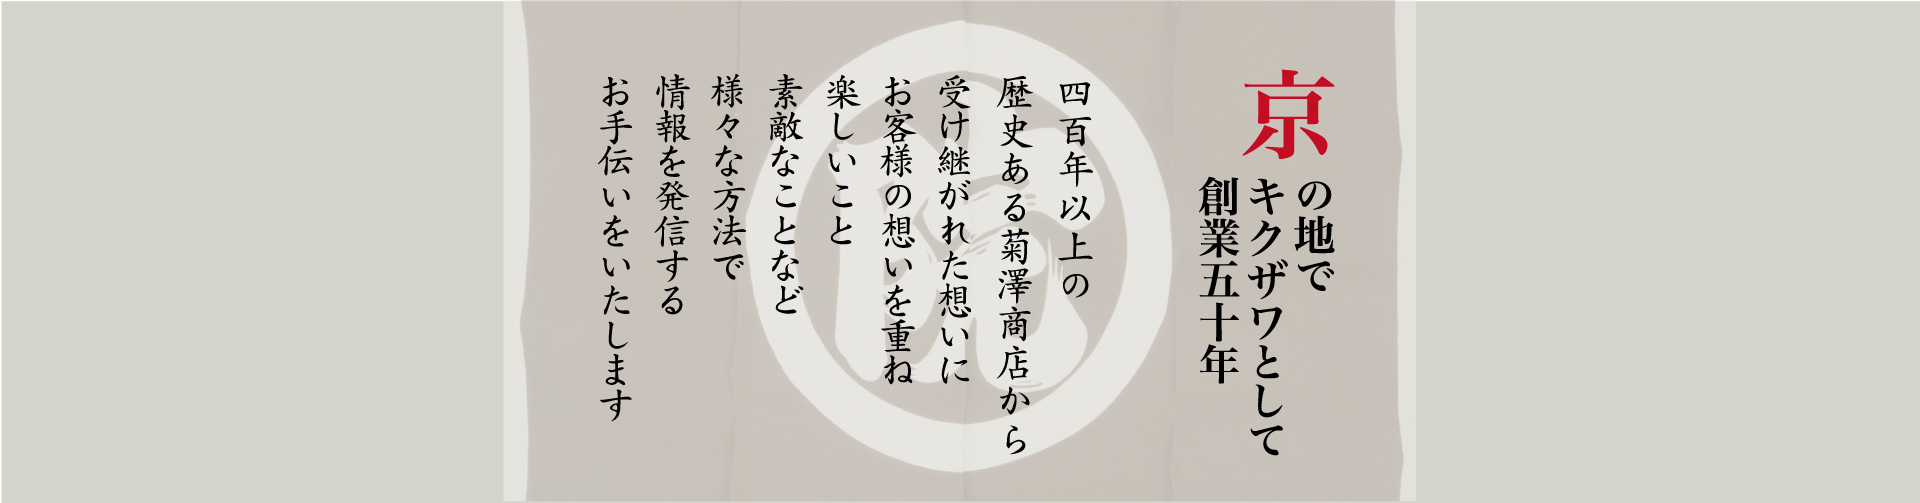 京の地でキクザワとして創業50余年 400年以上の歴史ある菊澤商店から受け継がれた想いにお客様の想いを重ね、楽しいこと素敵なことなど様々な方法で情報を発信するお手伝いをいたします。PC用